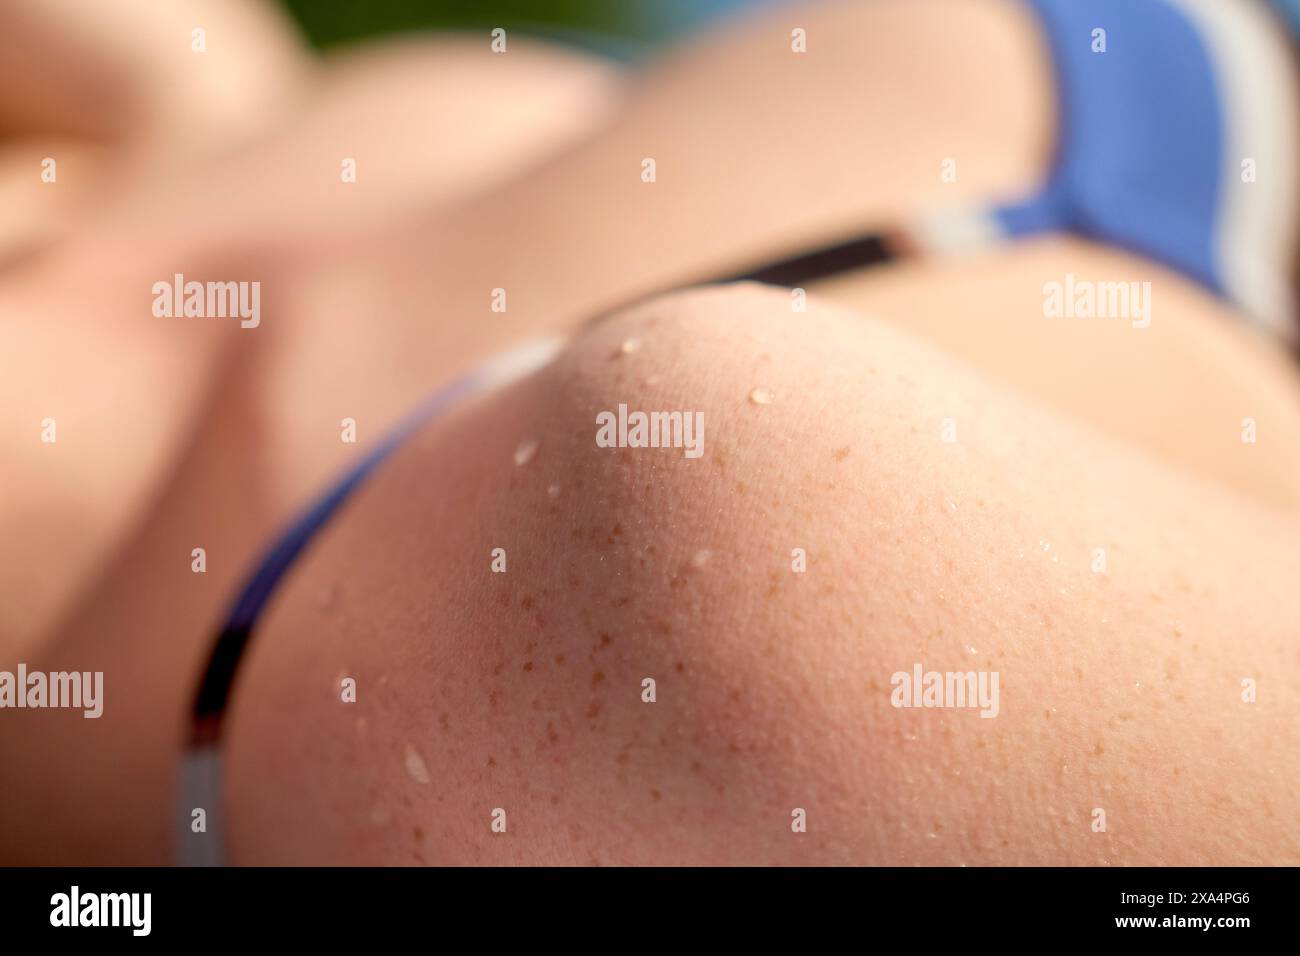 Nahaufnahme einer jungen Frau Schulter und Oberarm mit Wassertropfen auf der Haut, in blau-weißem Gewand. Stockfoto